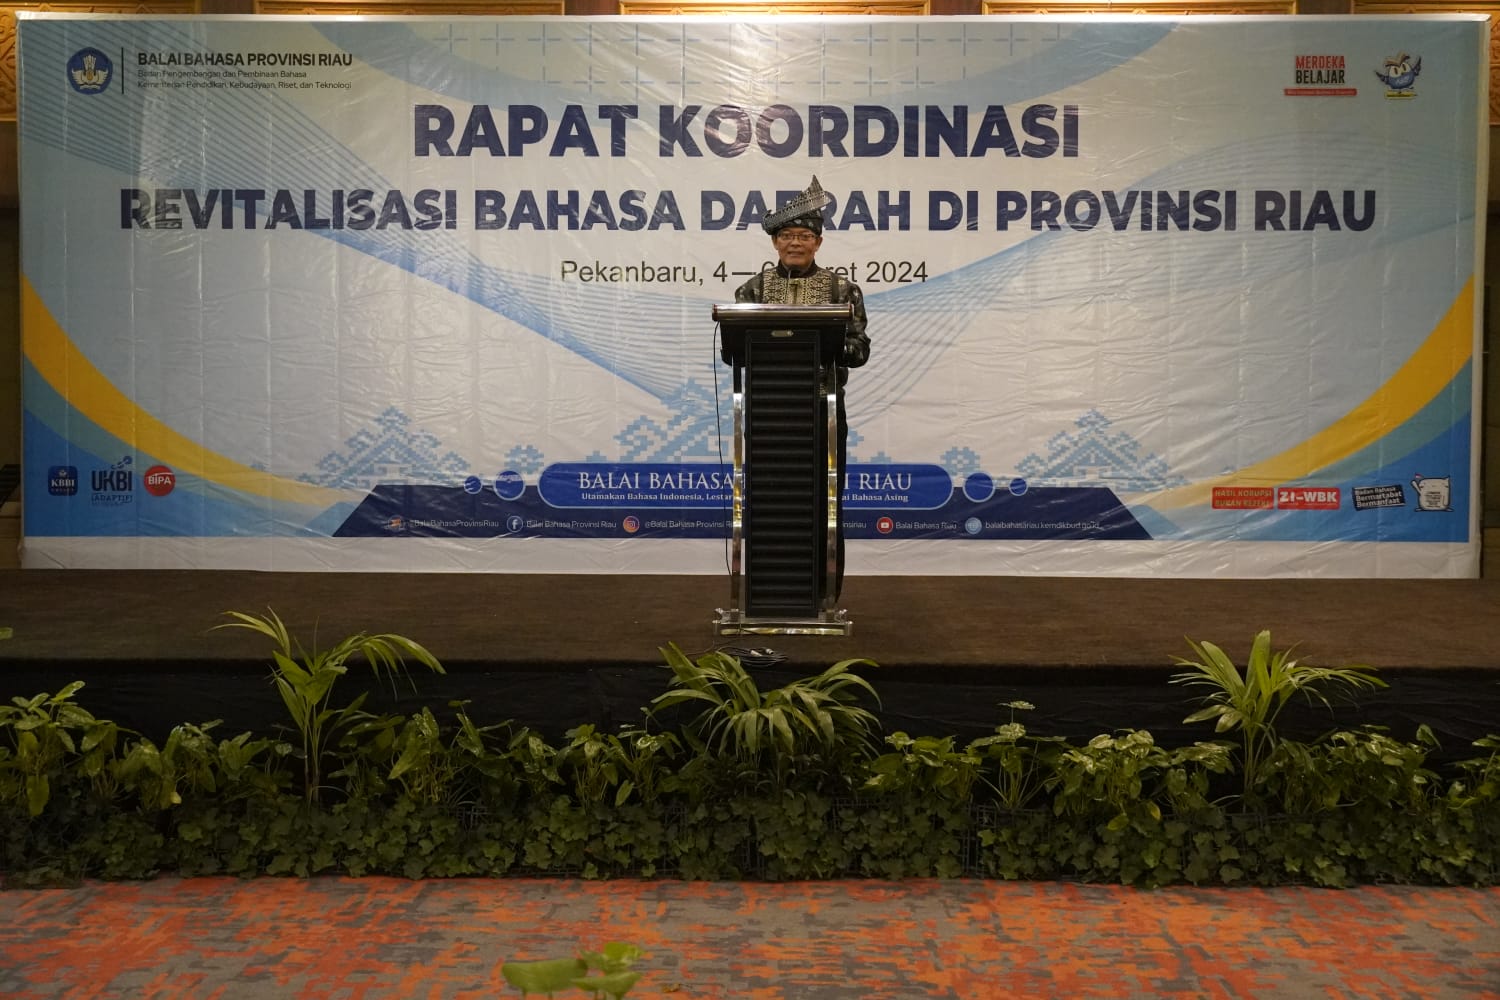 Sinergi Balai Bahasa Provinsi Riau dan Pemerintah Provinsi Riau dalam Program Revitalisasi Bahasa Daerah